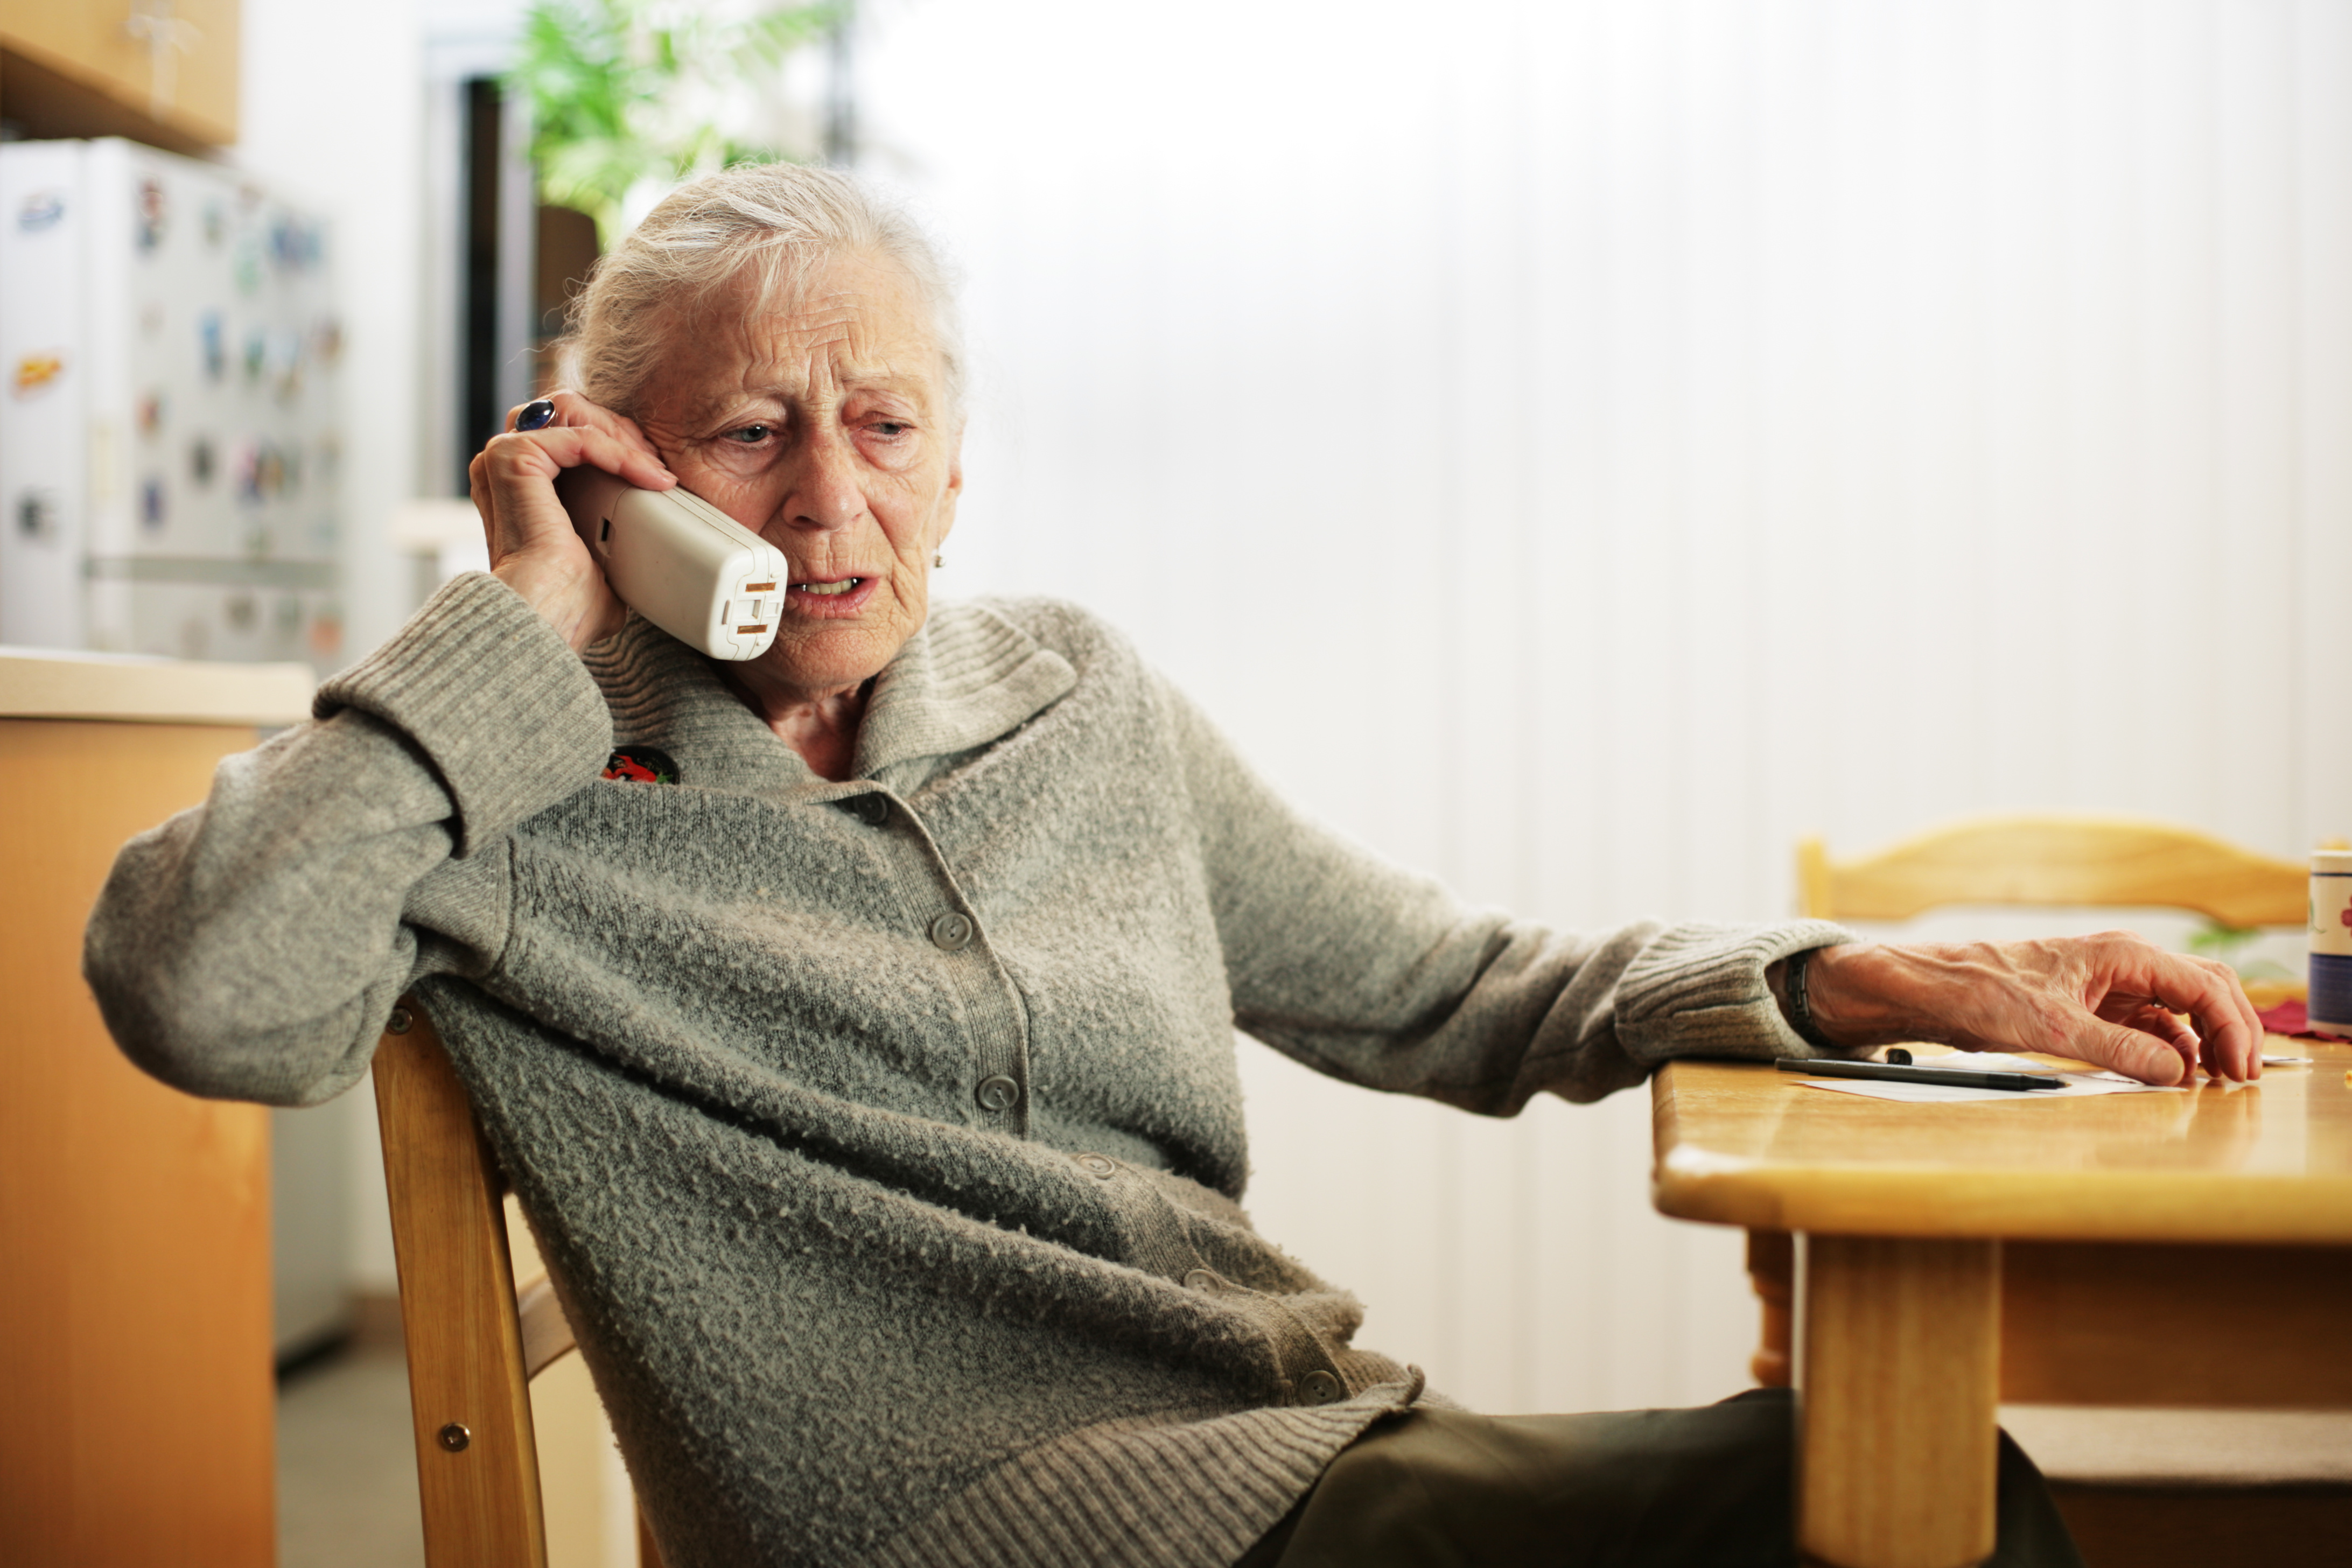 Пожилой смех. Пожилая женщина с телефоном. Пенсионер с телефоном в руке. Телефон для пожилых. Пожилая женщина с телефоном в руках.